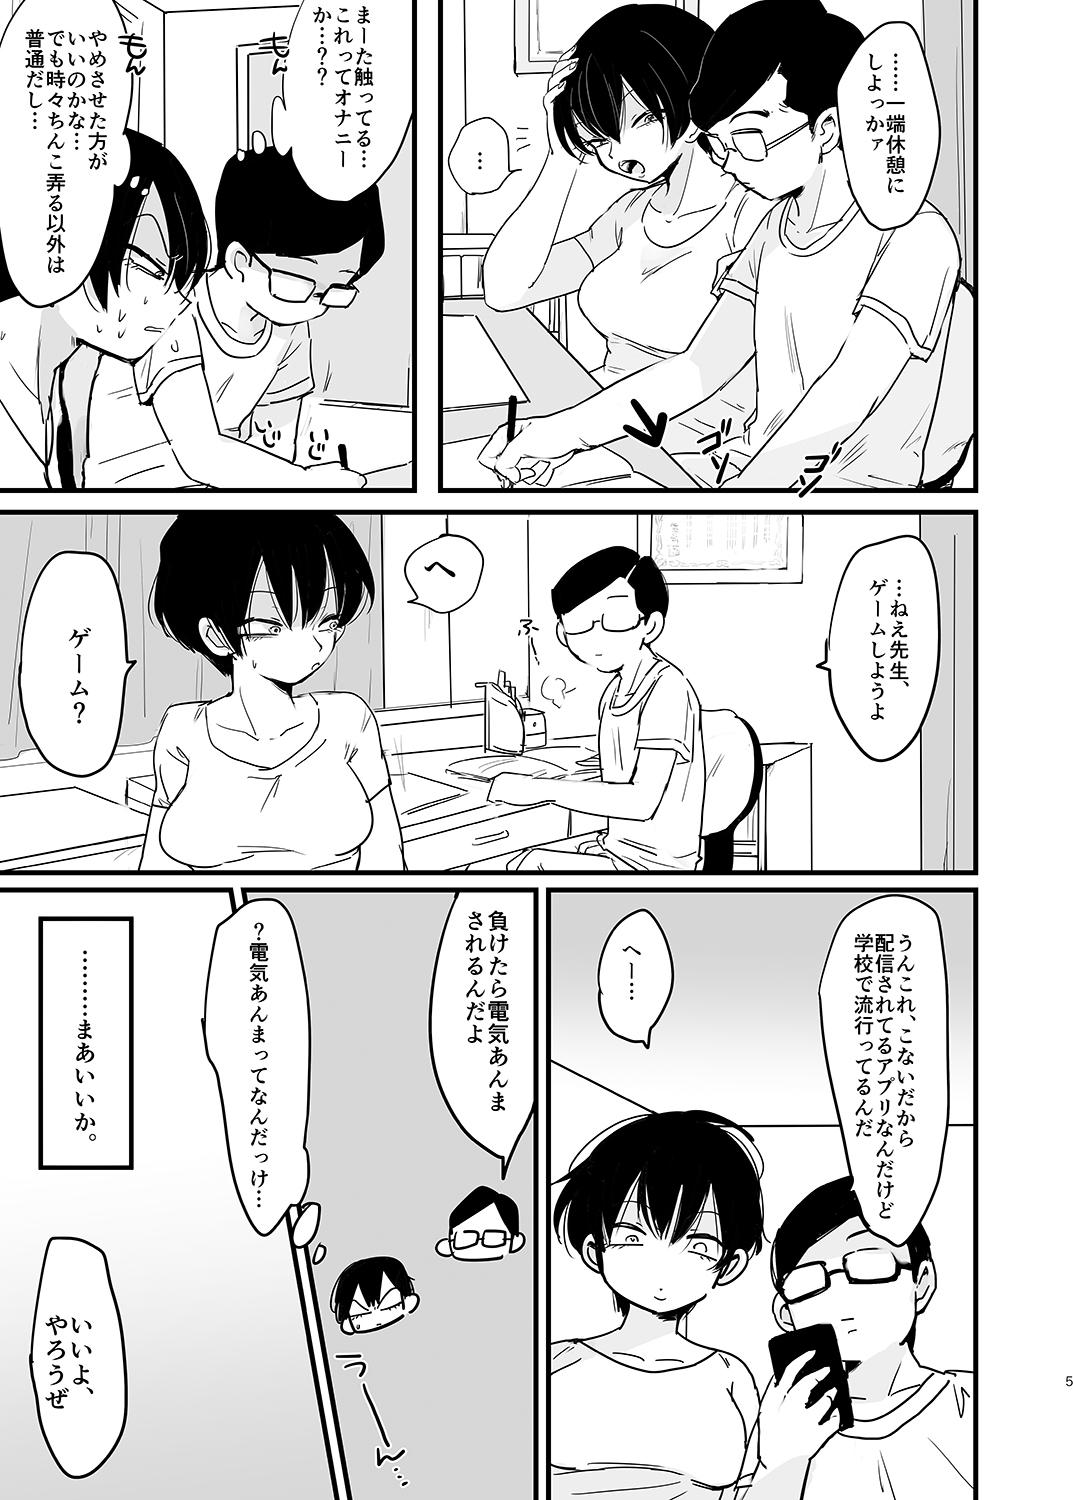 Toys Sensei no, atsukute, ichiban oku - Yowamushi pedal Gay Cumjerkingoff - Page 6